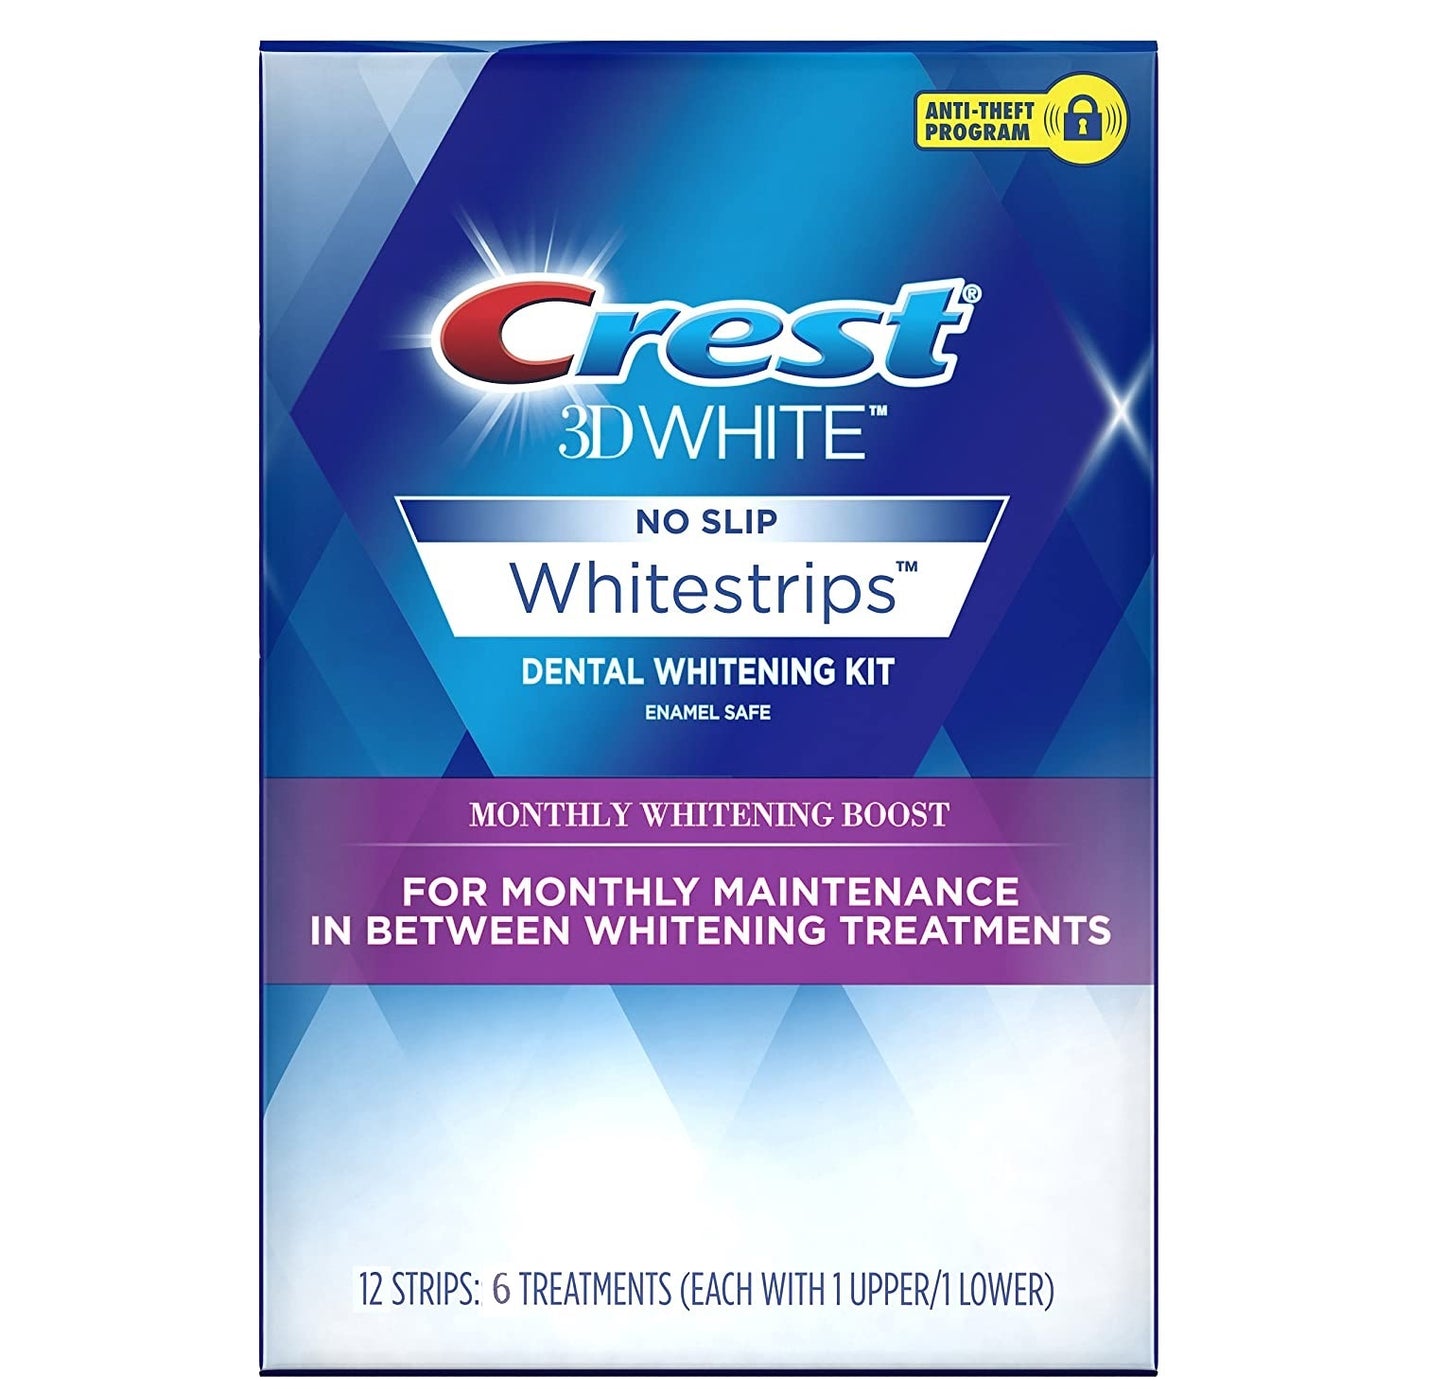 Crest 3D White No Slip Whitestrips Whitening Kit, 12 Strips: 6 Treatments